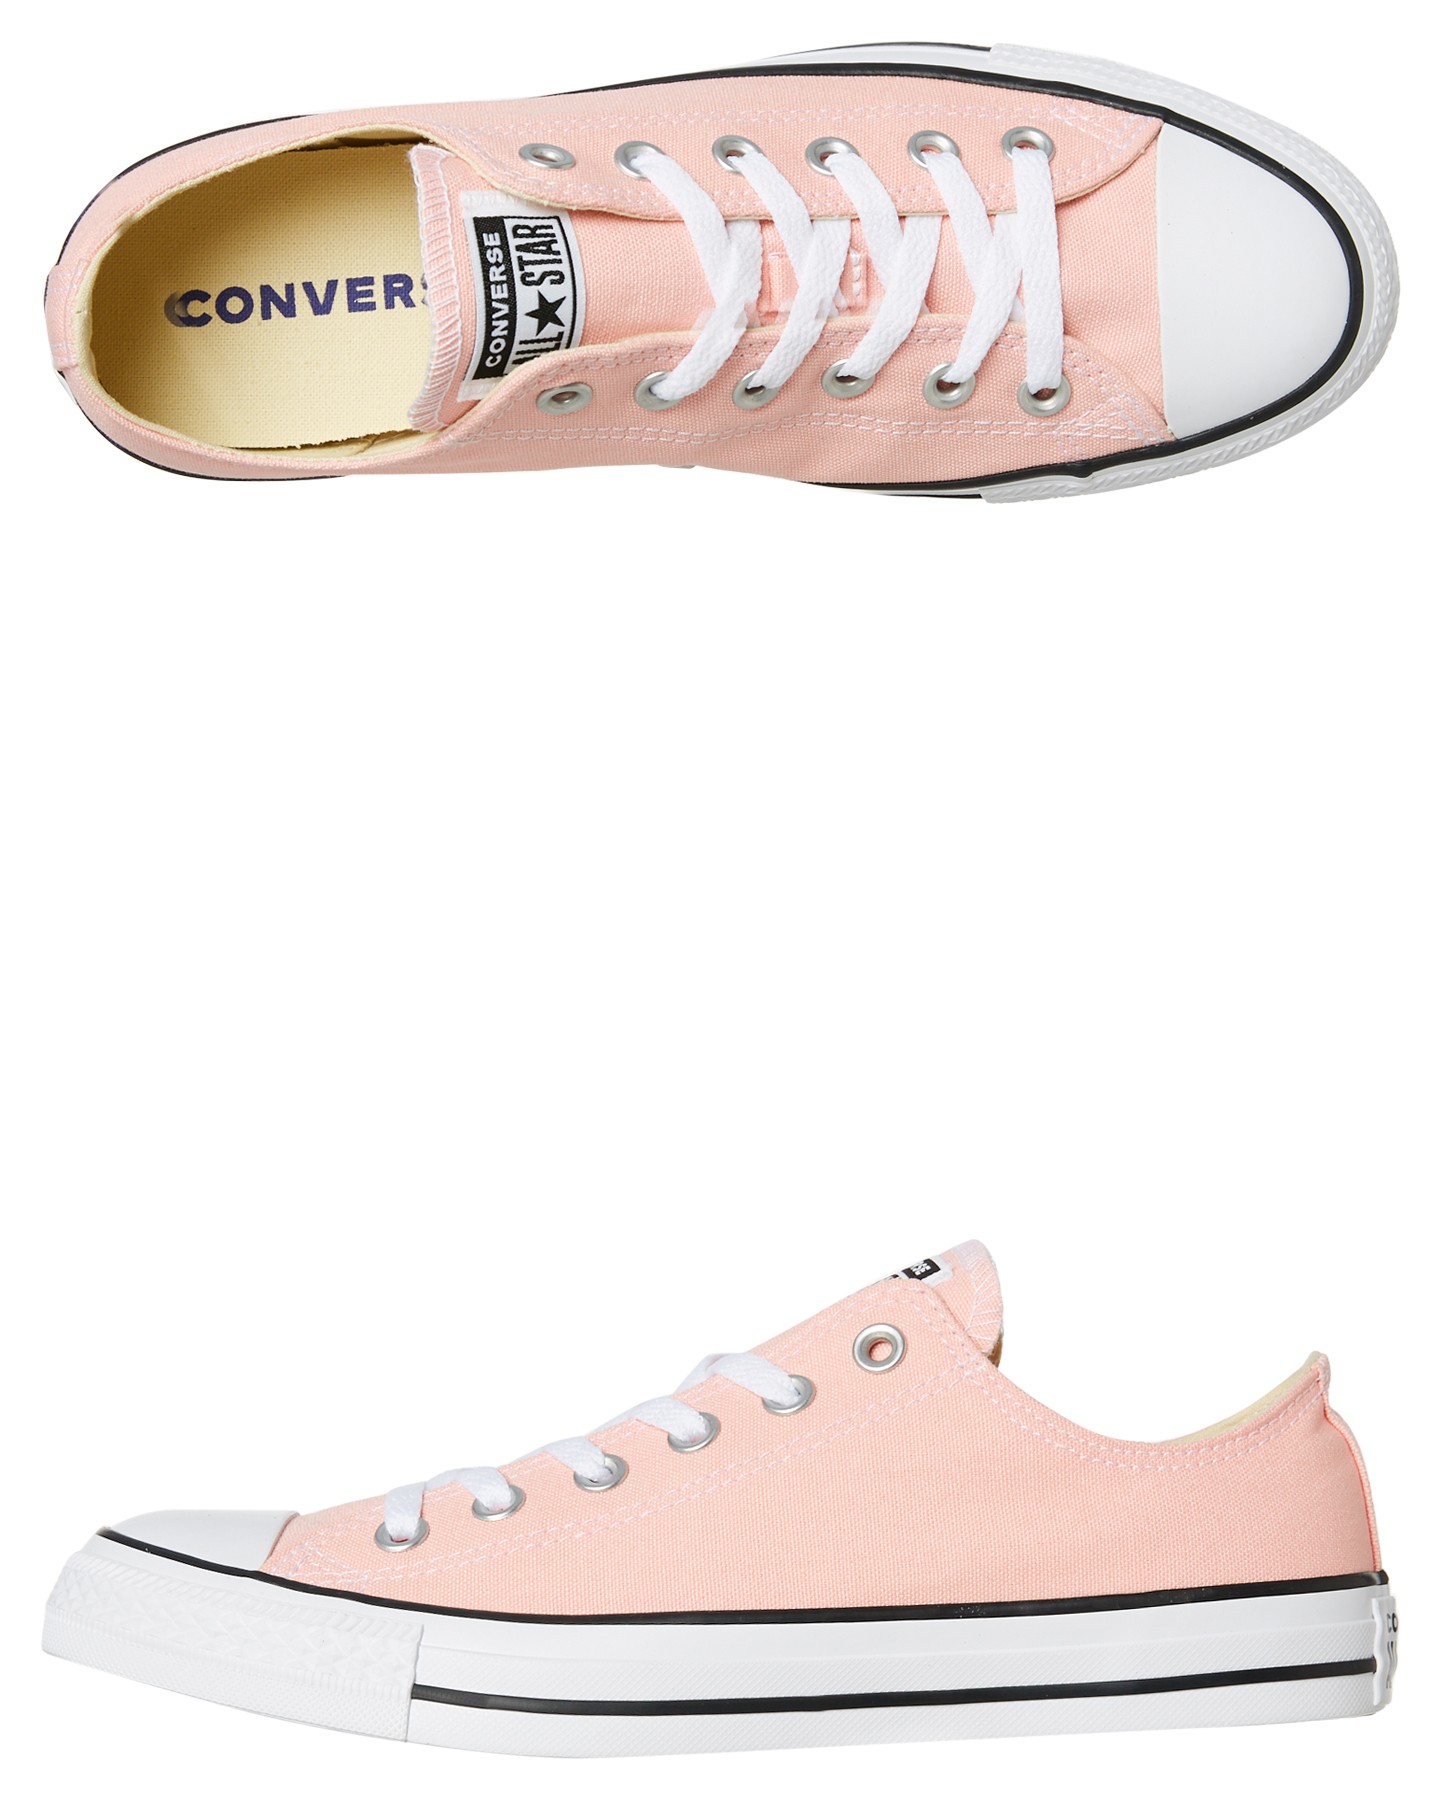 men's pink converse shoes